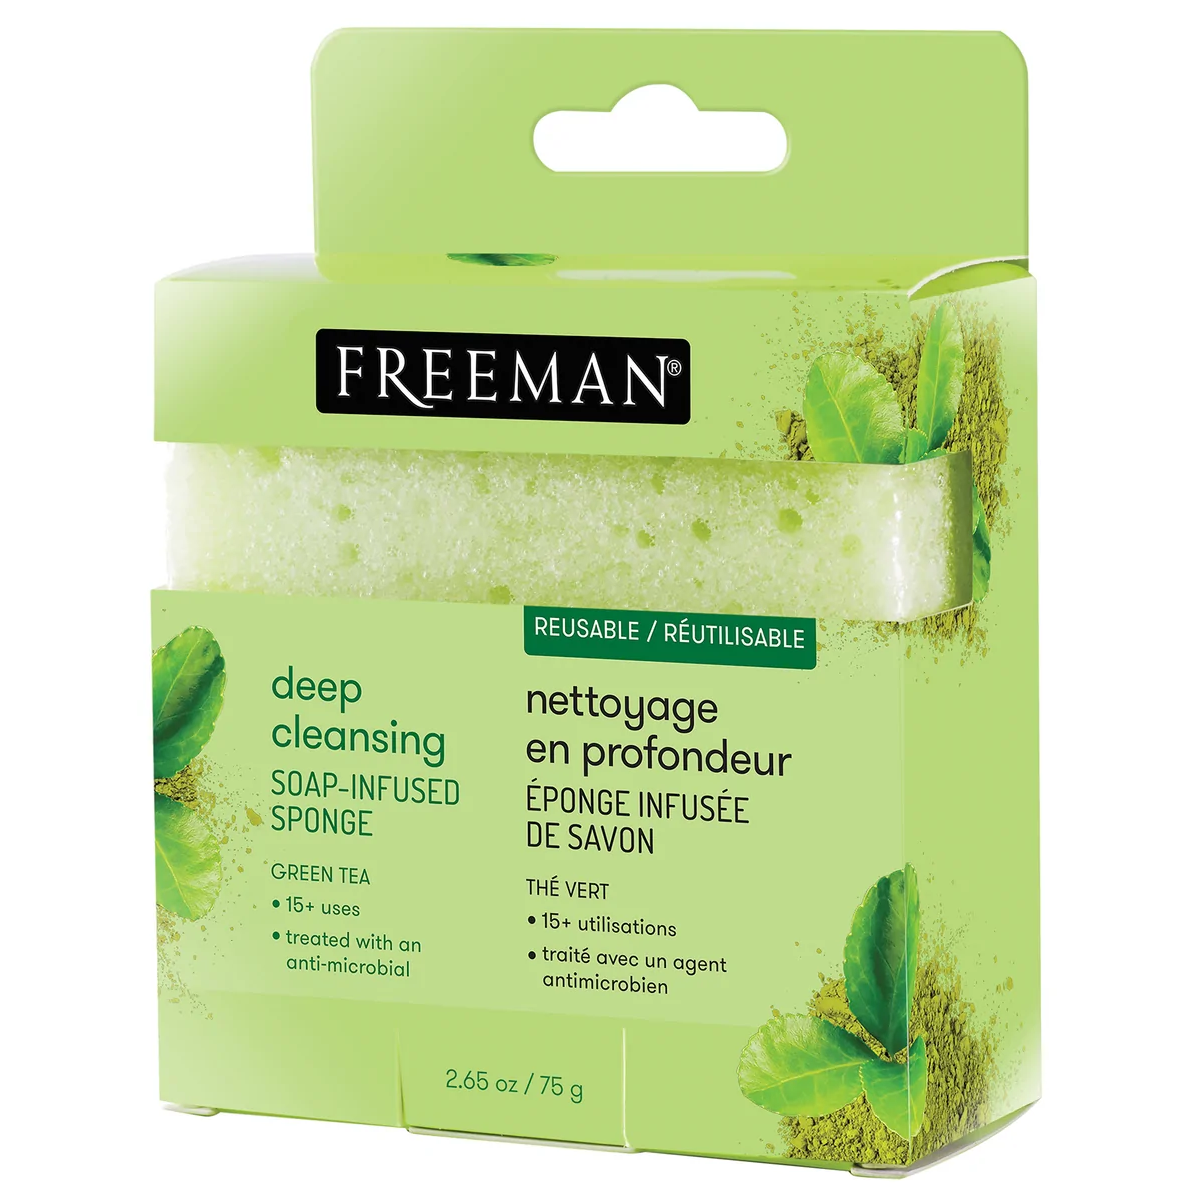 FREEMAN Deep Cleansing Green Tea Soap-Infused Sponge